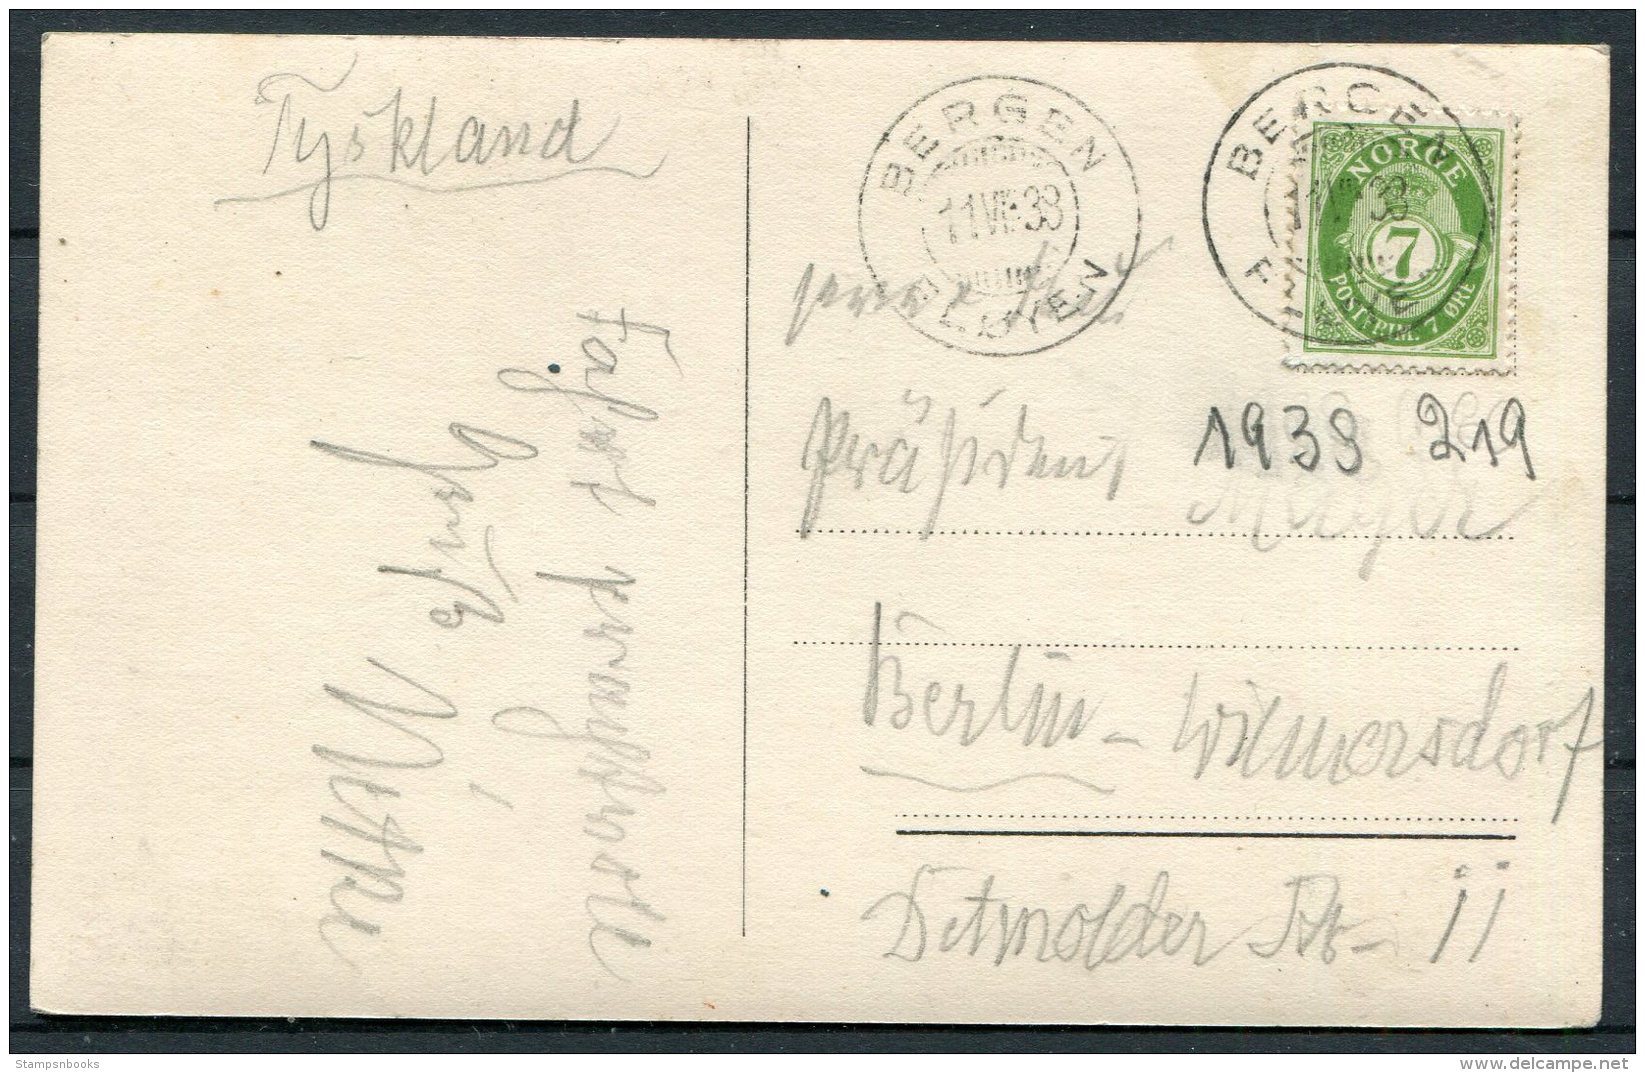 1933 Norway Bergen Haakonshallen Postcard 7ore - Berlin, Germany - Covers & Documents